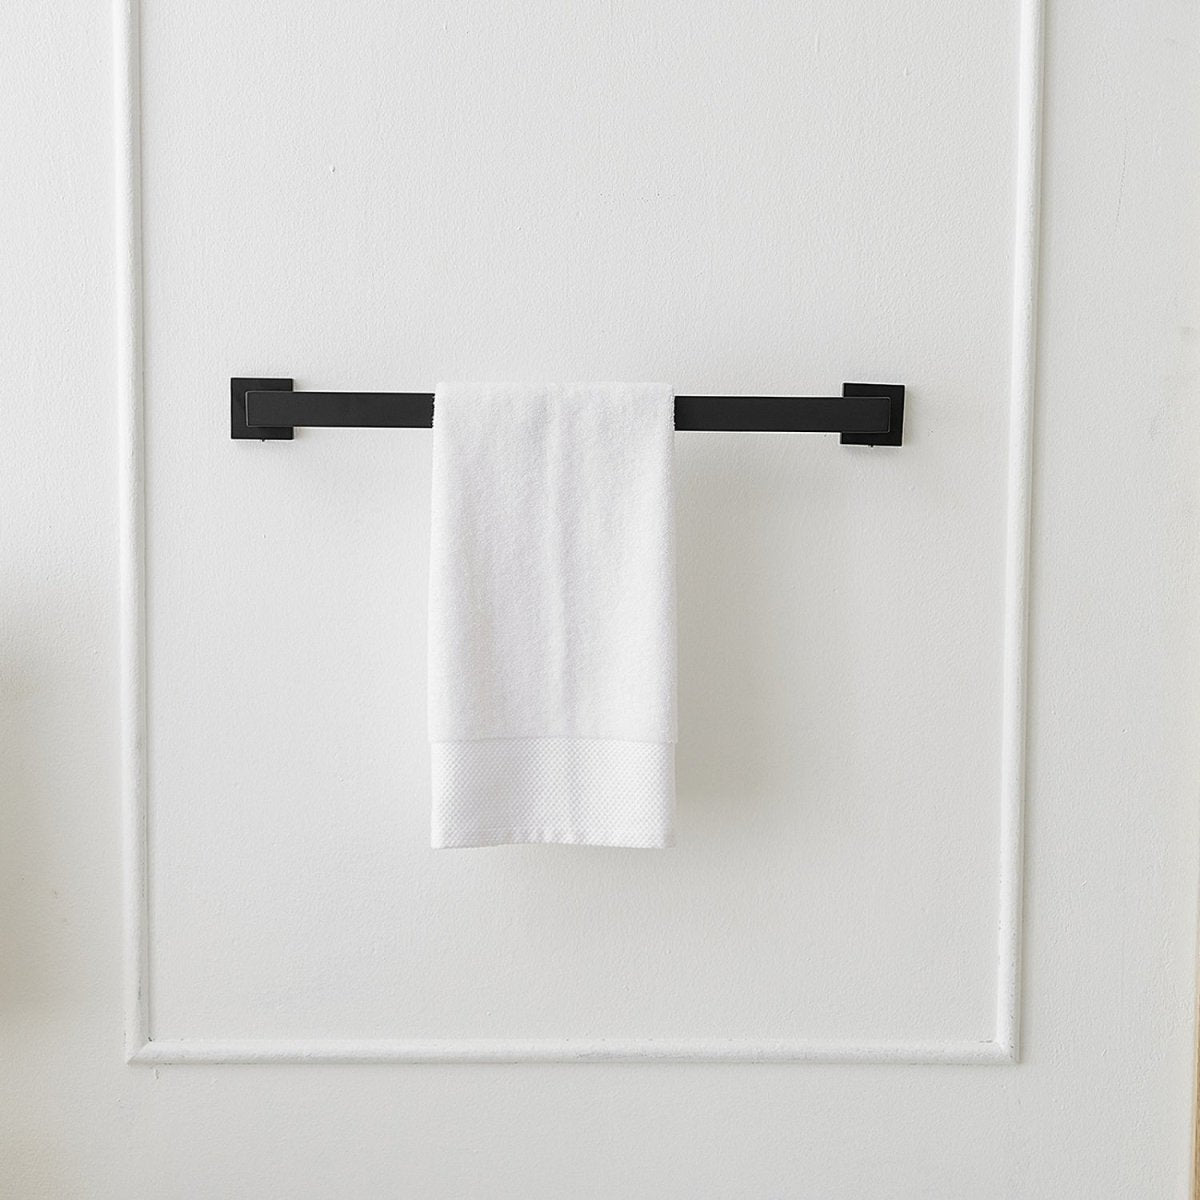 5 PCS Towel Bar Towel Hook Toilet Paper Holder Set Black - buyfaucet.com